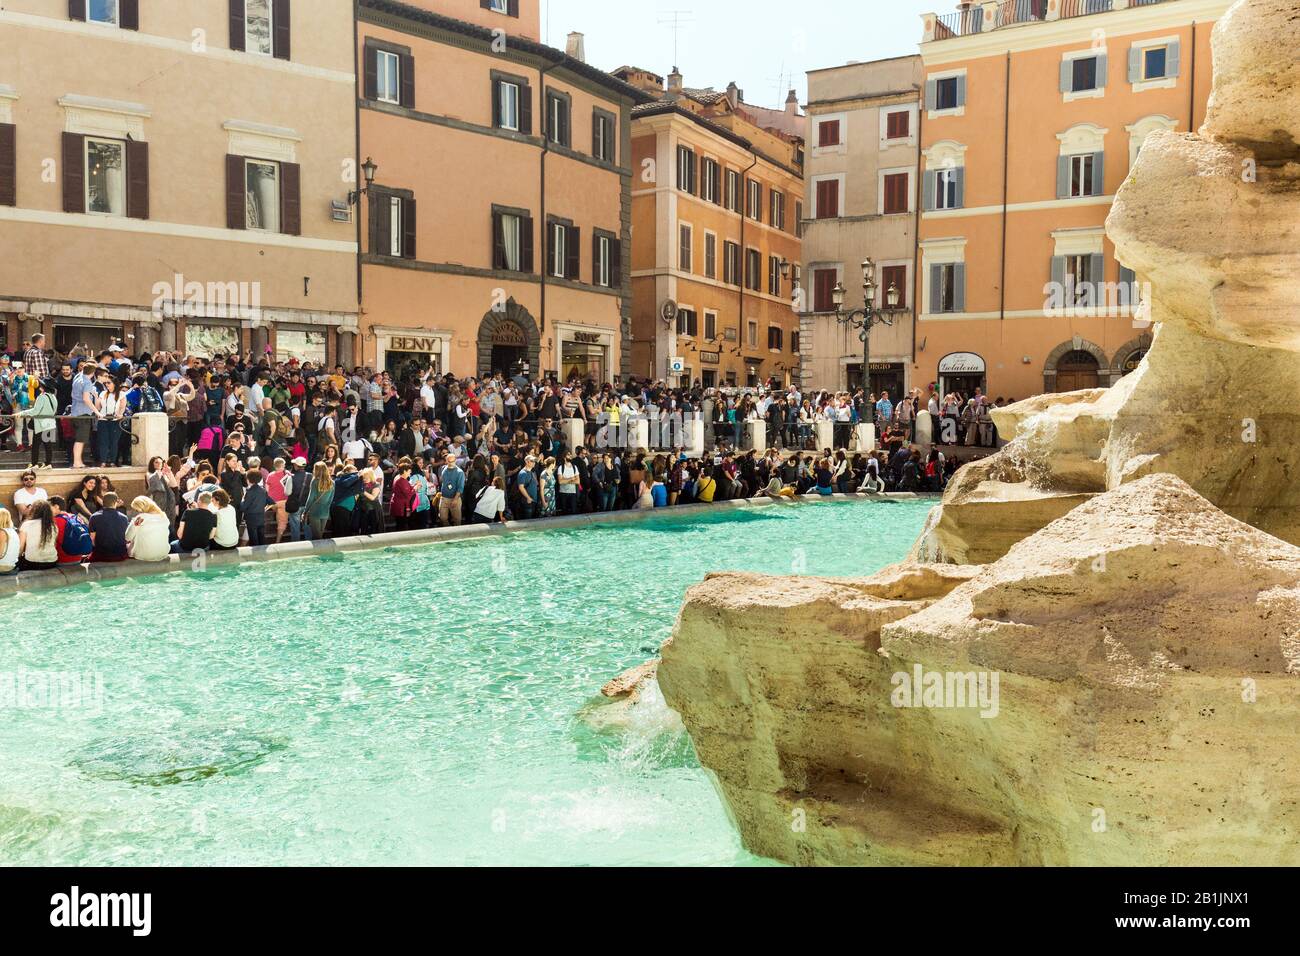 Touristes visitant la fontaine de Trevi à Rome, Italie, 2017 Banque D'Images